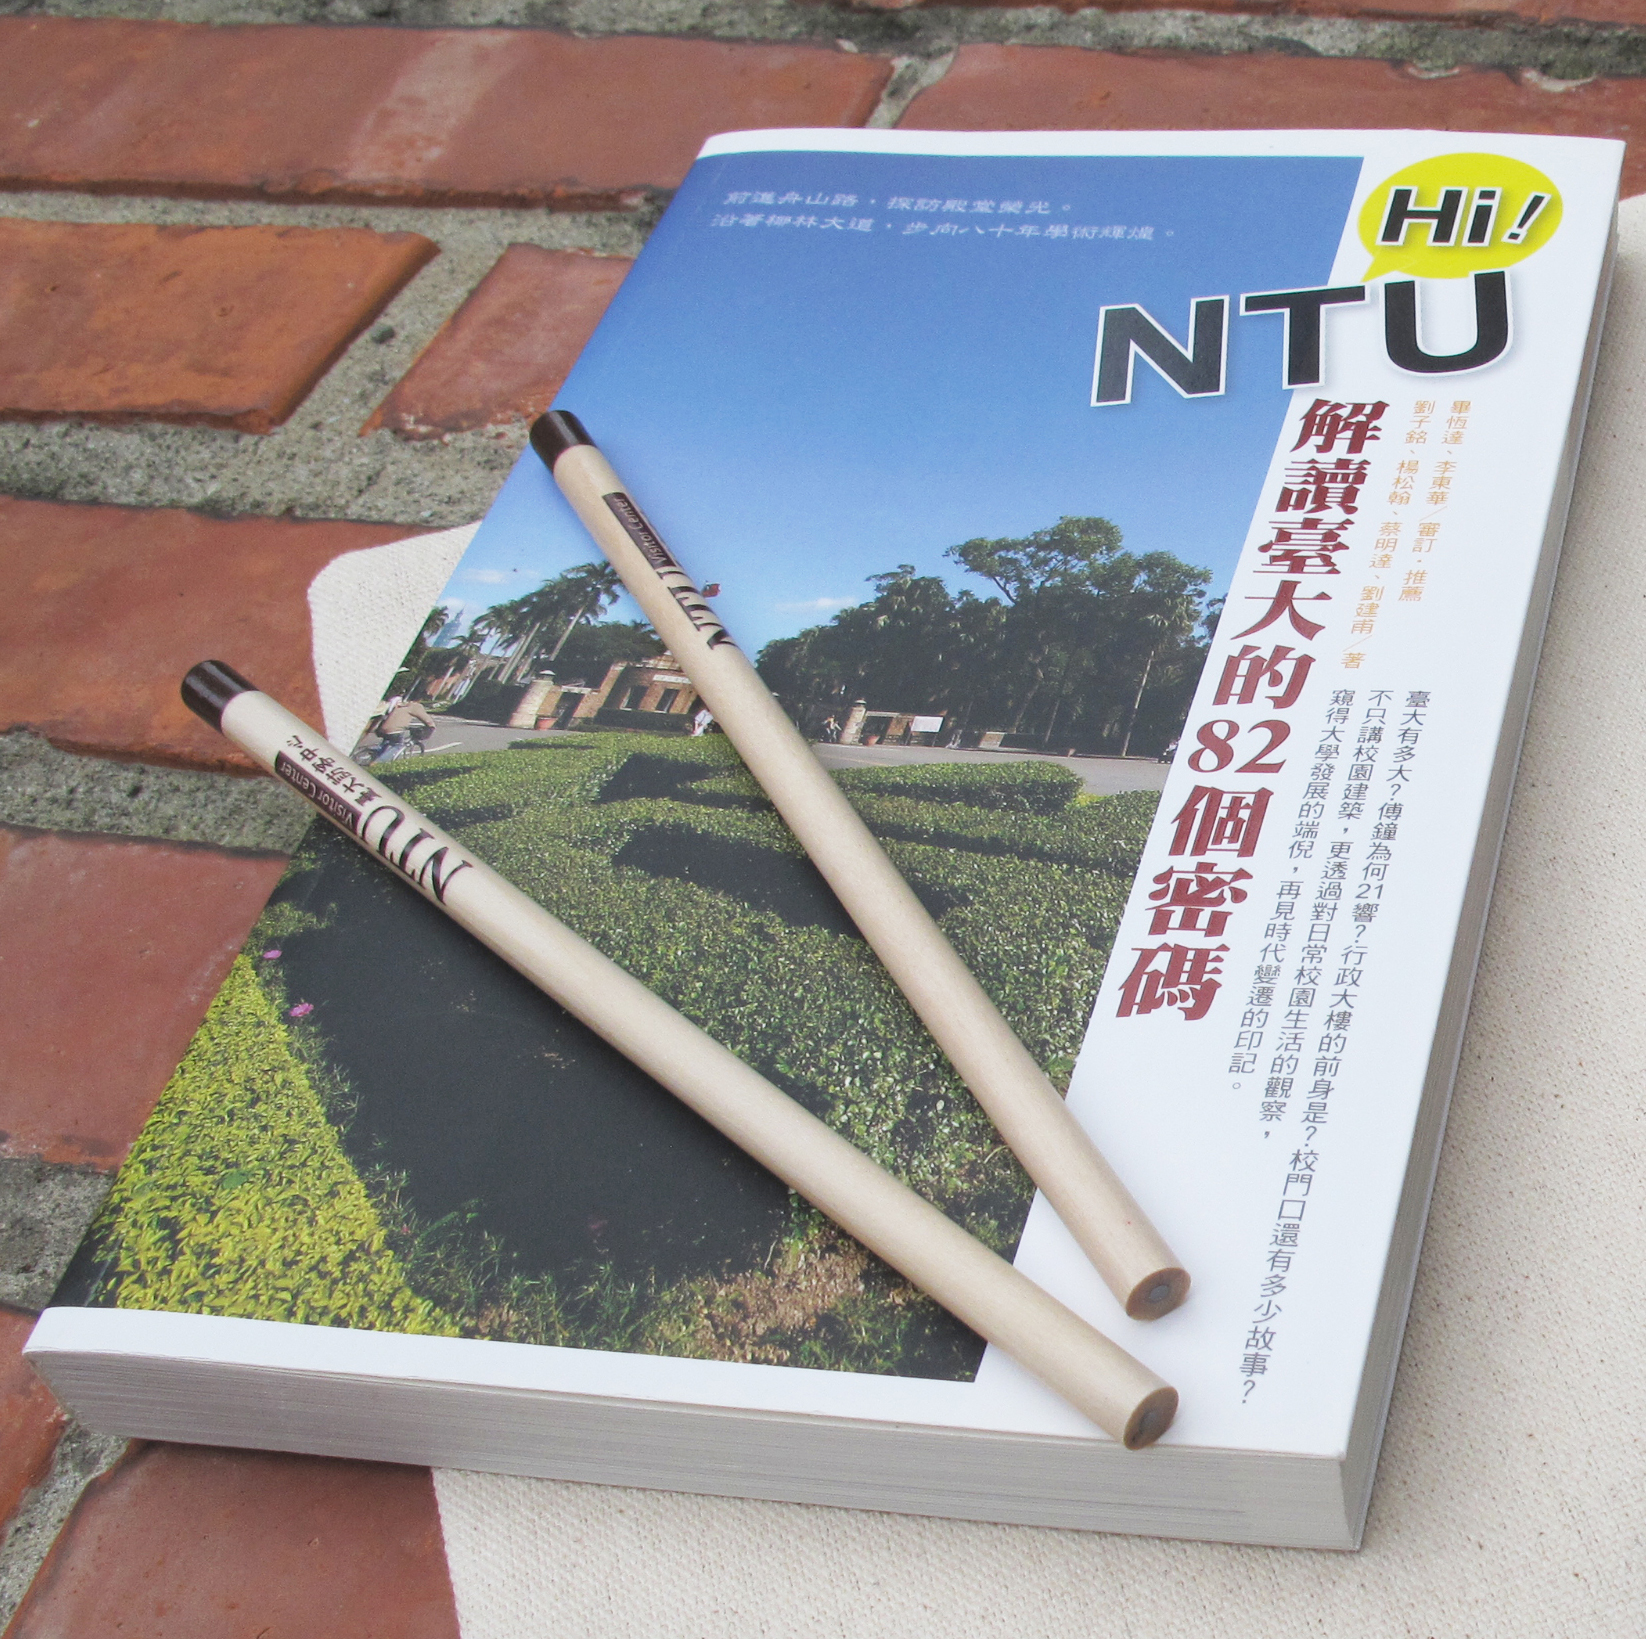 導覽手冊『Hi!NTU解讀臺大的82個密碼』熱賣中